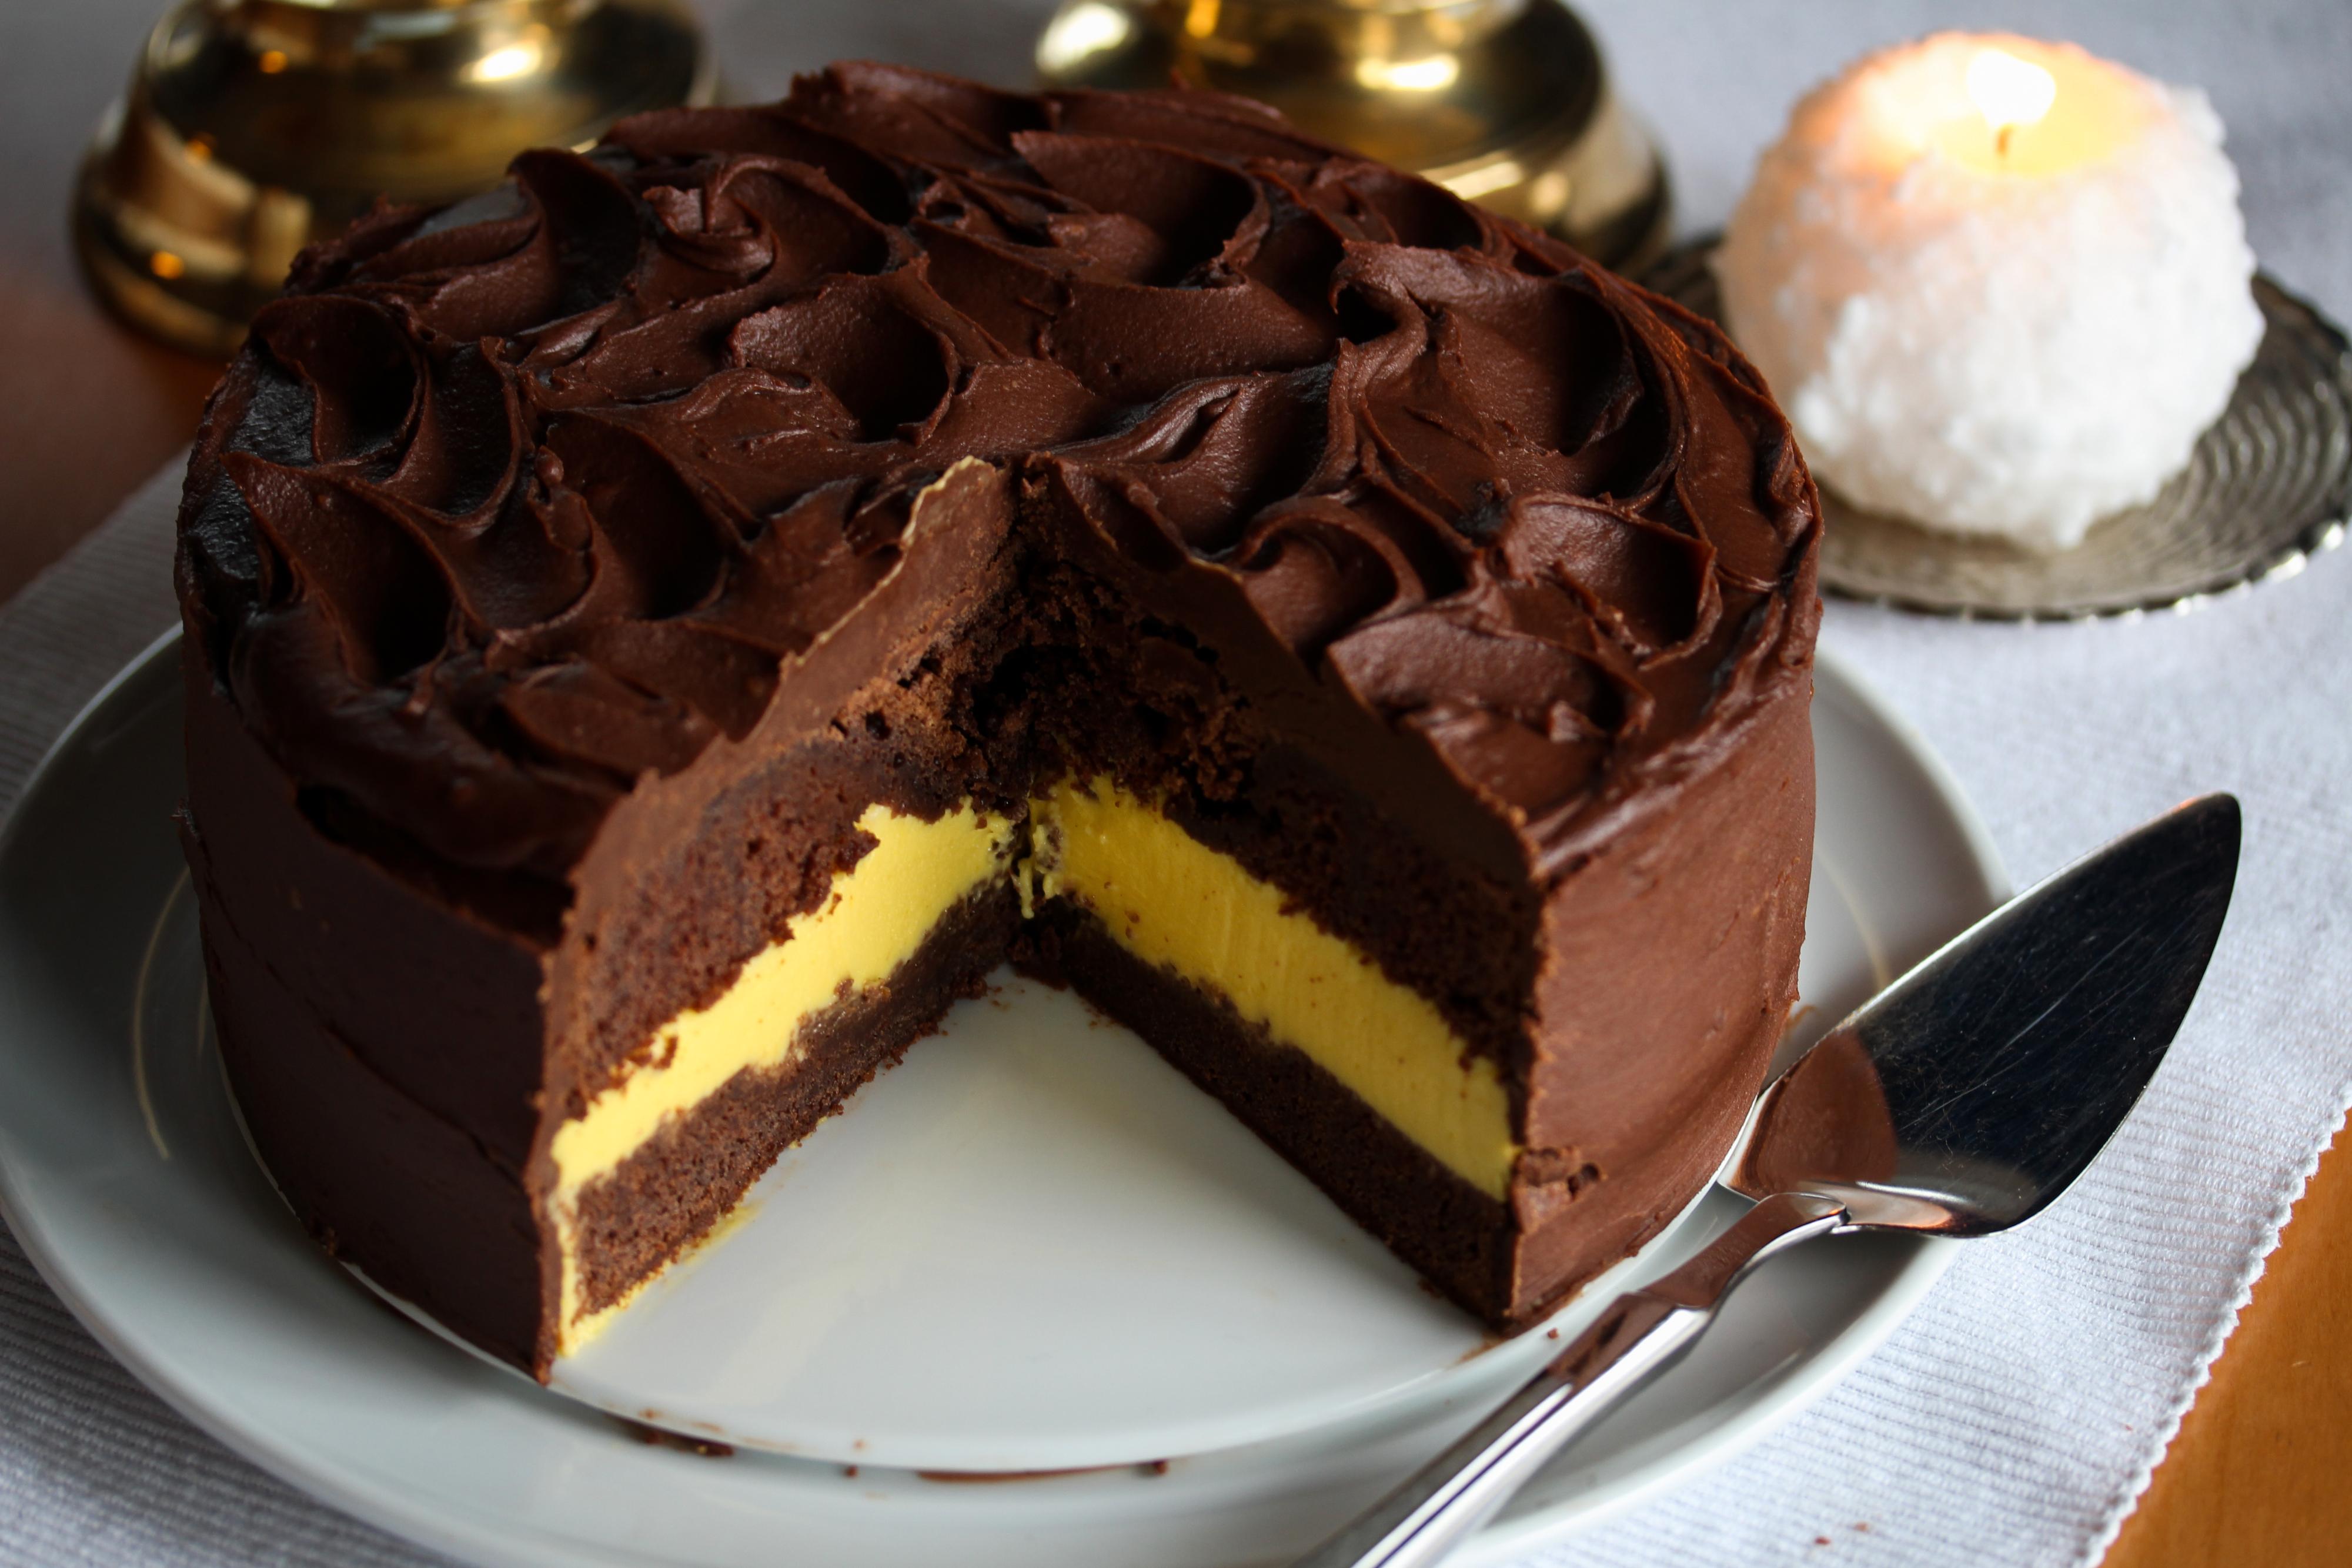 Fordel sjokoladeglasuren jevnt over kaken. La kaken stå i kjøleskapet frem til servering.